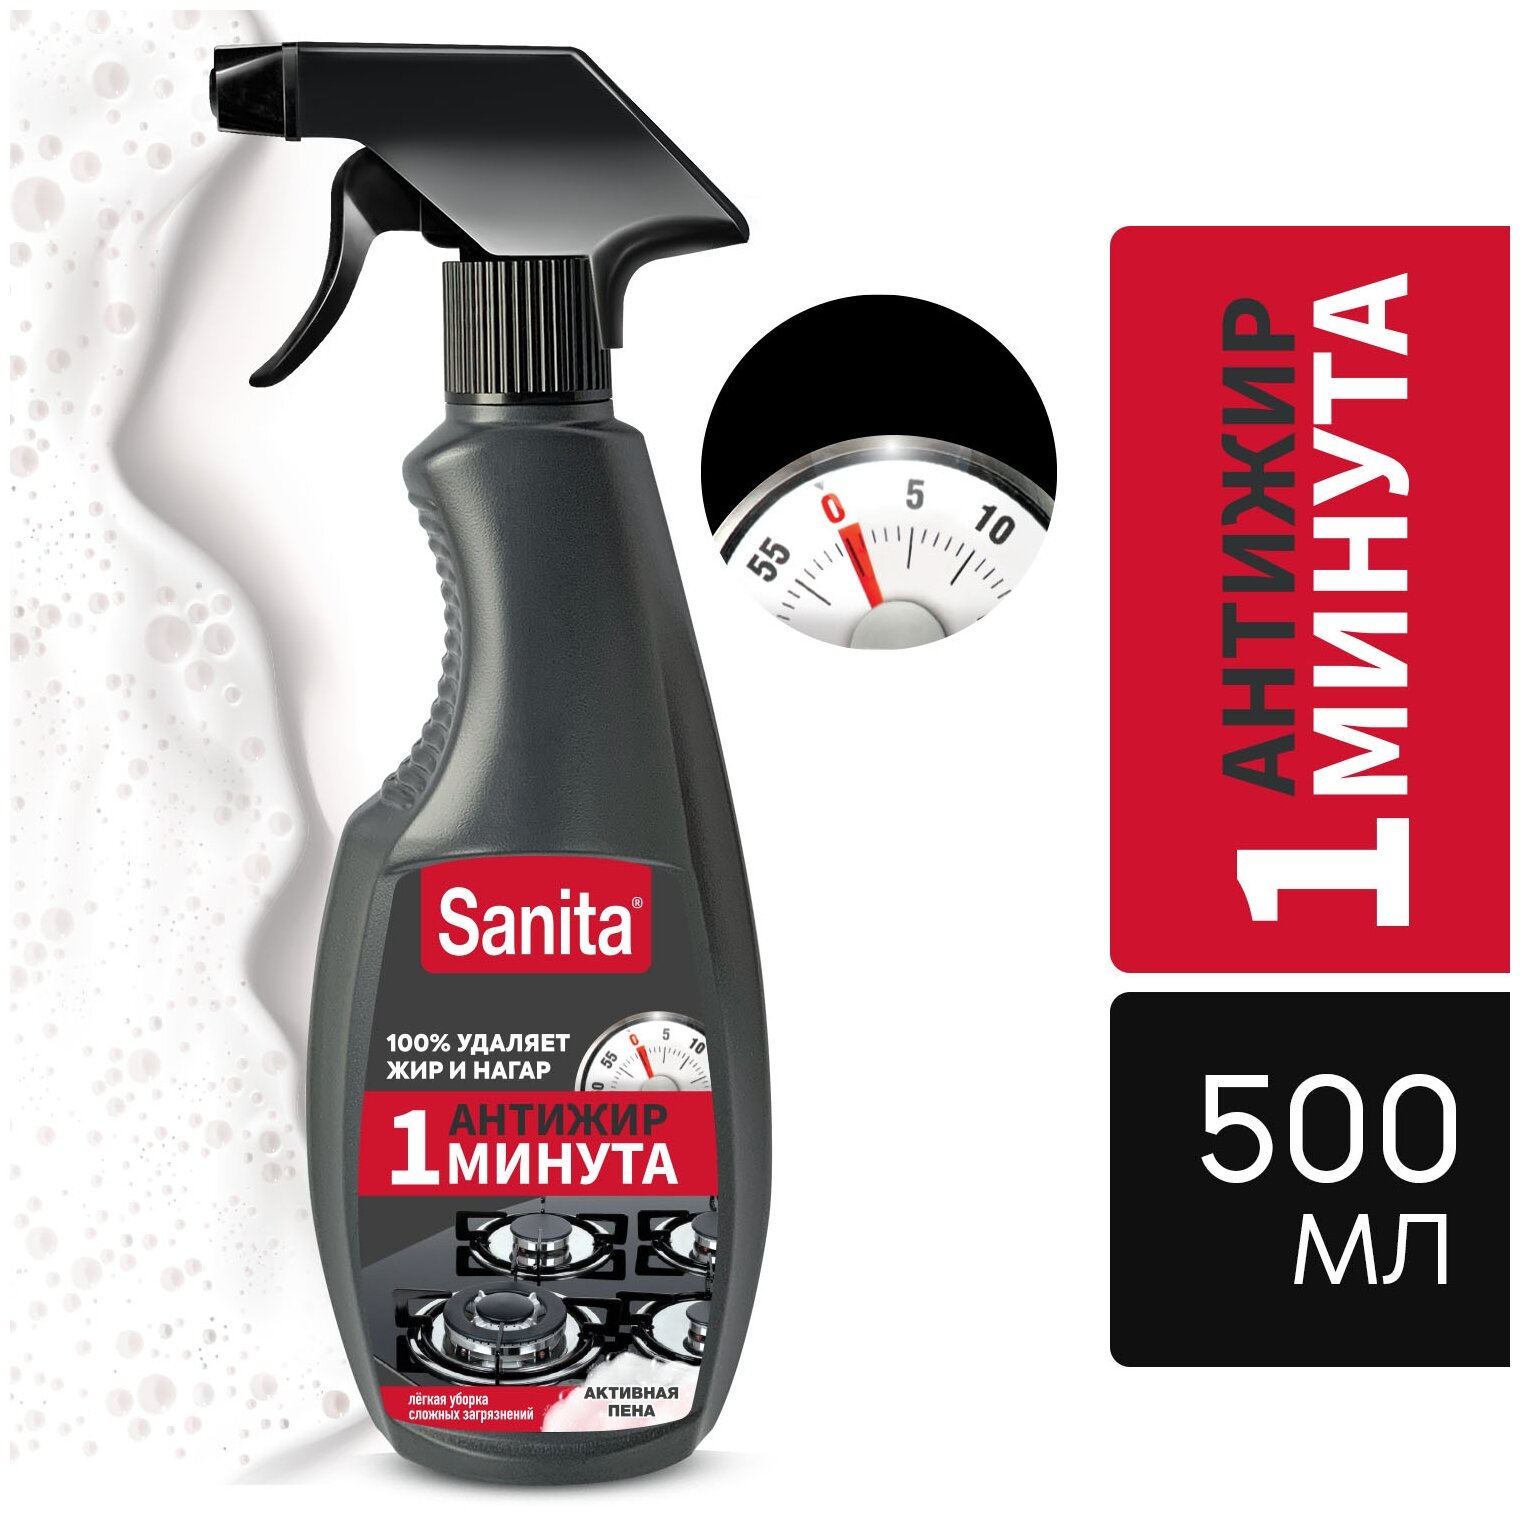 Чистящее средство для кухни "SANITA" спрей очиститель Антижир "1 минута", 500 мл